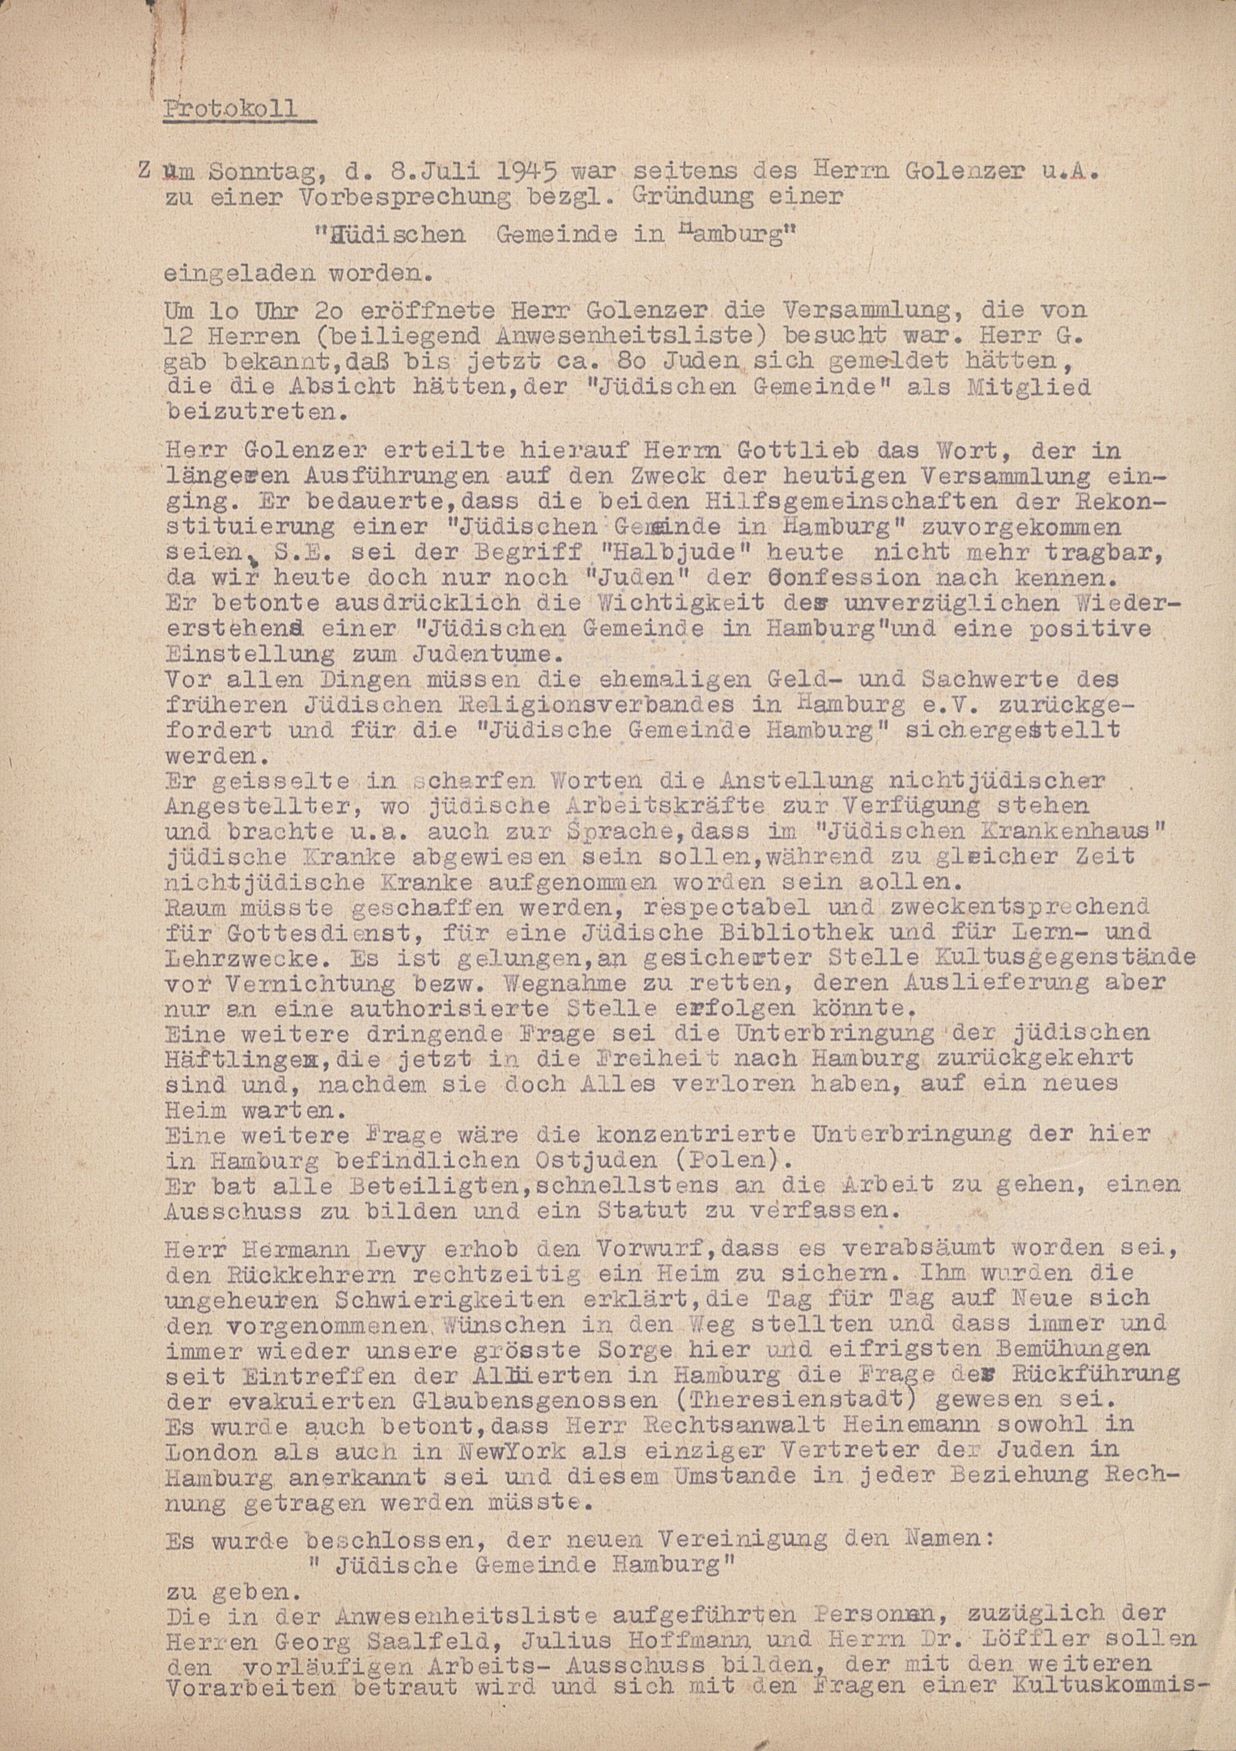 Niederschrift einer Zusammenkunft zur Neugründung der Jüdischen Gemeinde in Hamburg im Juli 1945